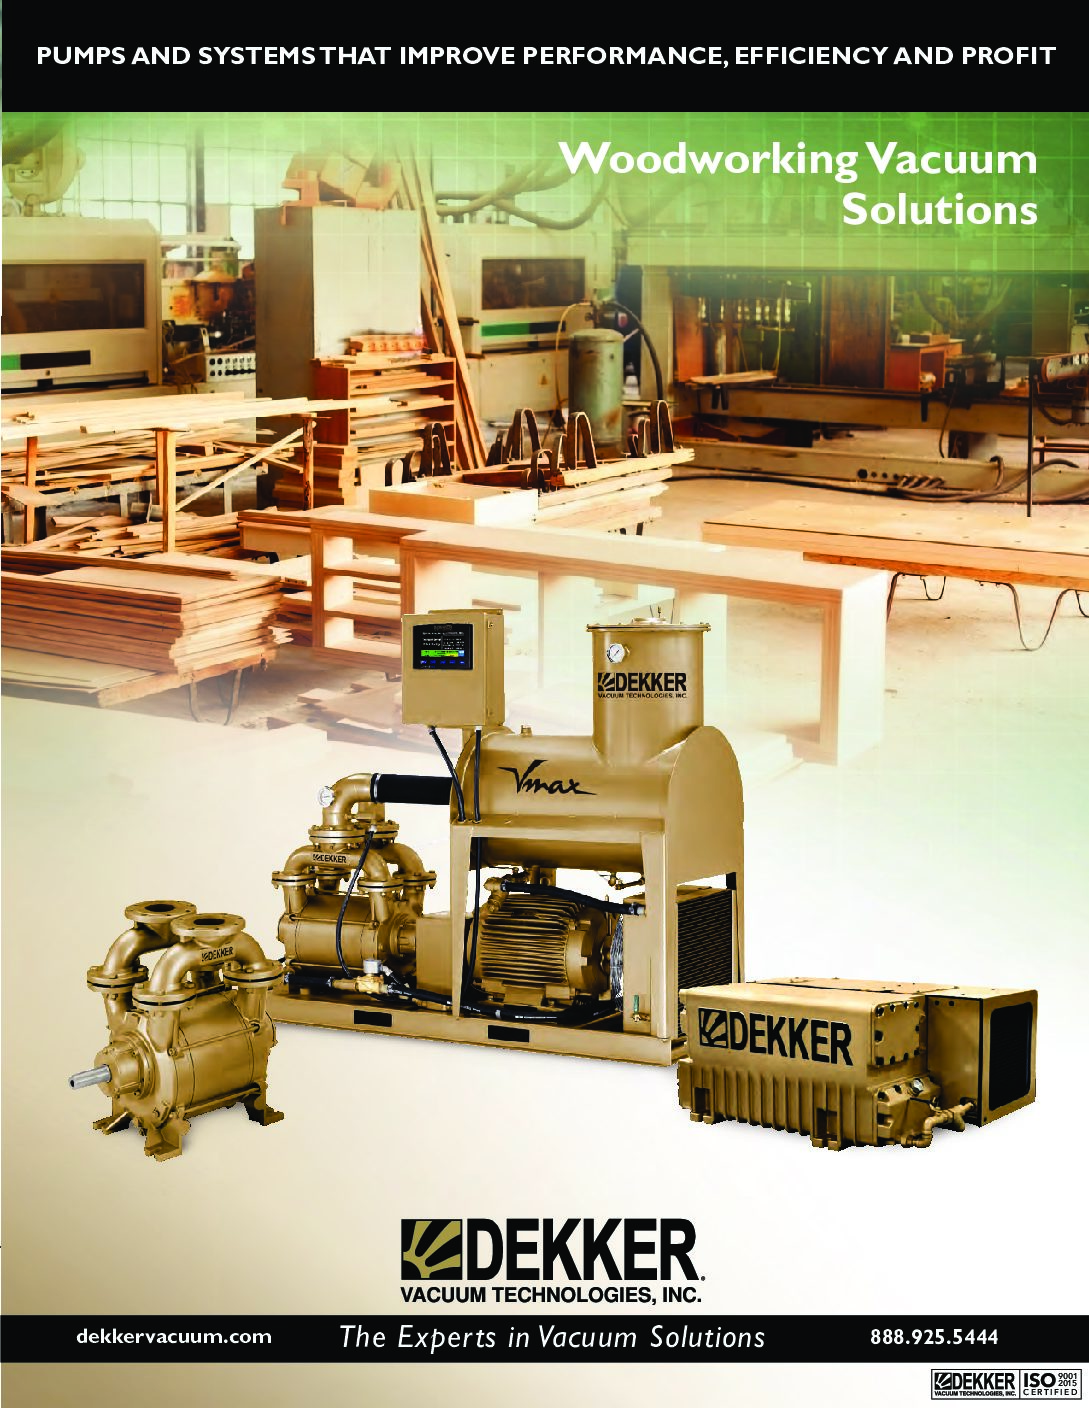 DEKKER_Woodworking_Vacuum_Solutions_Brochure